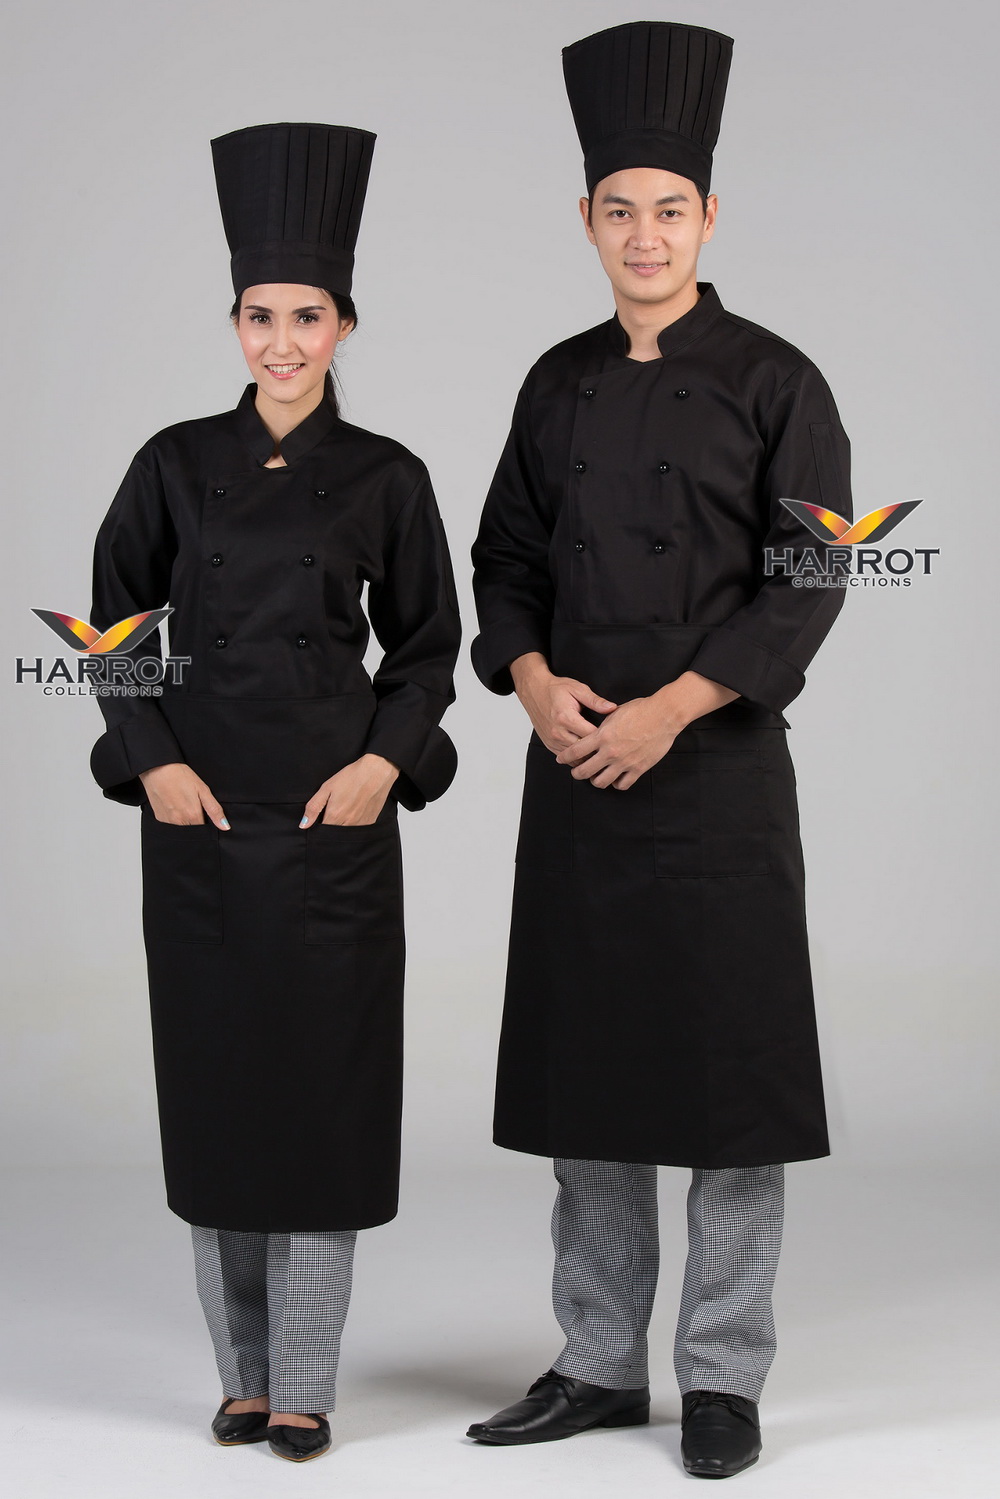 เสื้อกุ๊ก เสื้อเชฟ ชุดเชฟ เสื้อพ่อครัว แขนยาว สีดำ กระดุมถอดได้ สีดำ (FSS0213)